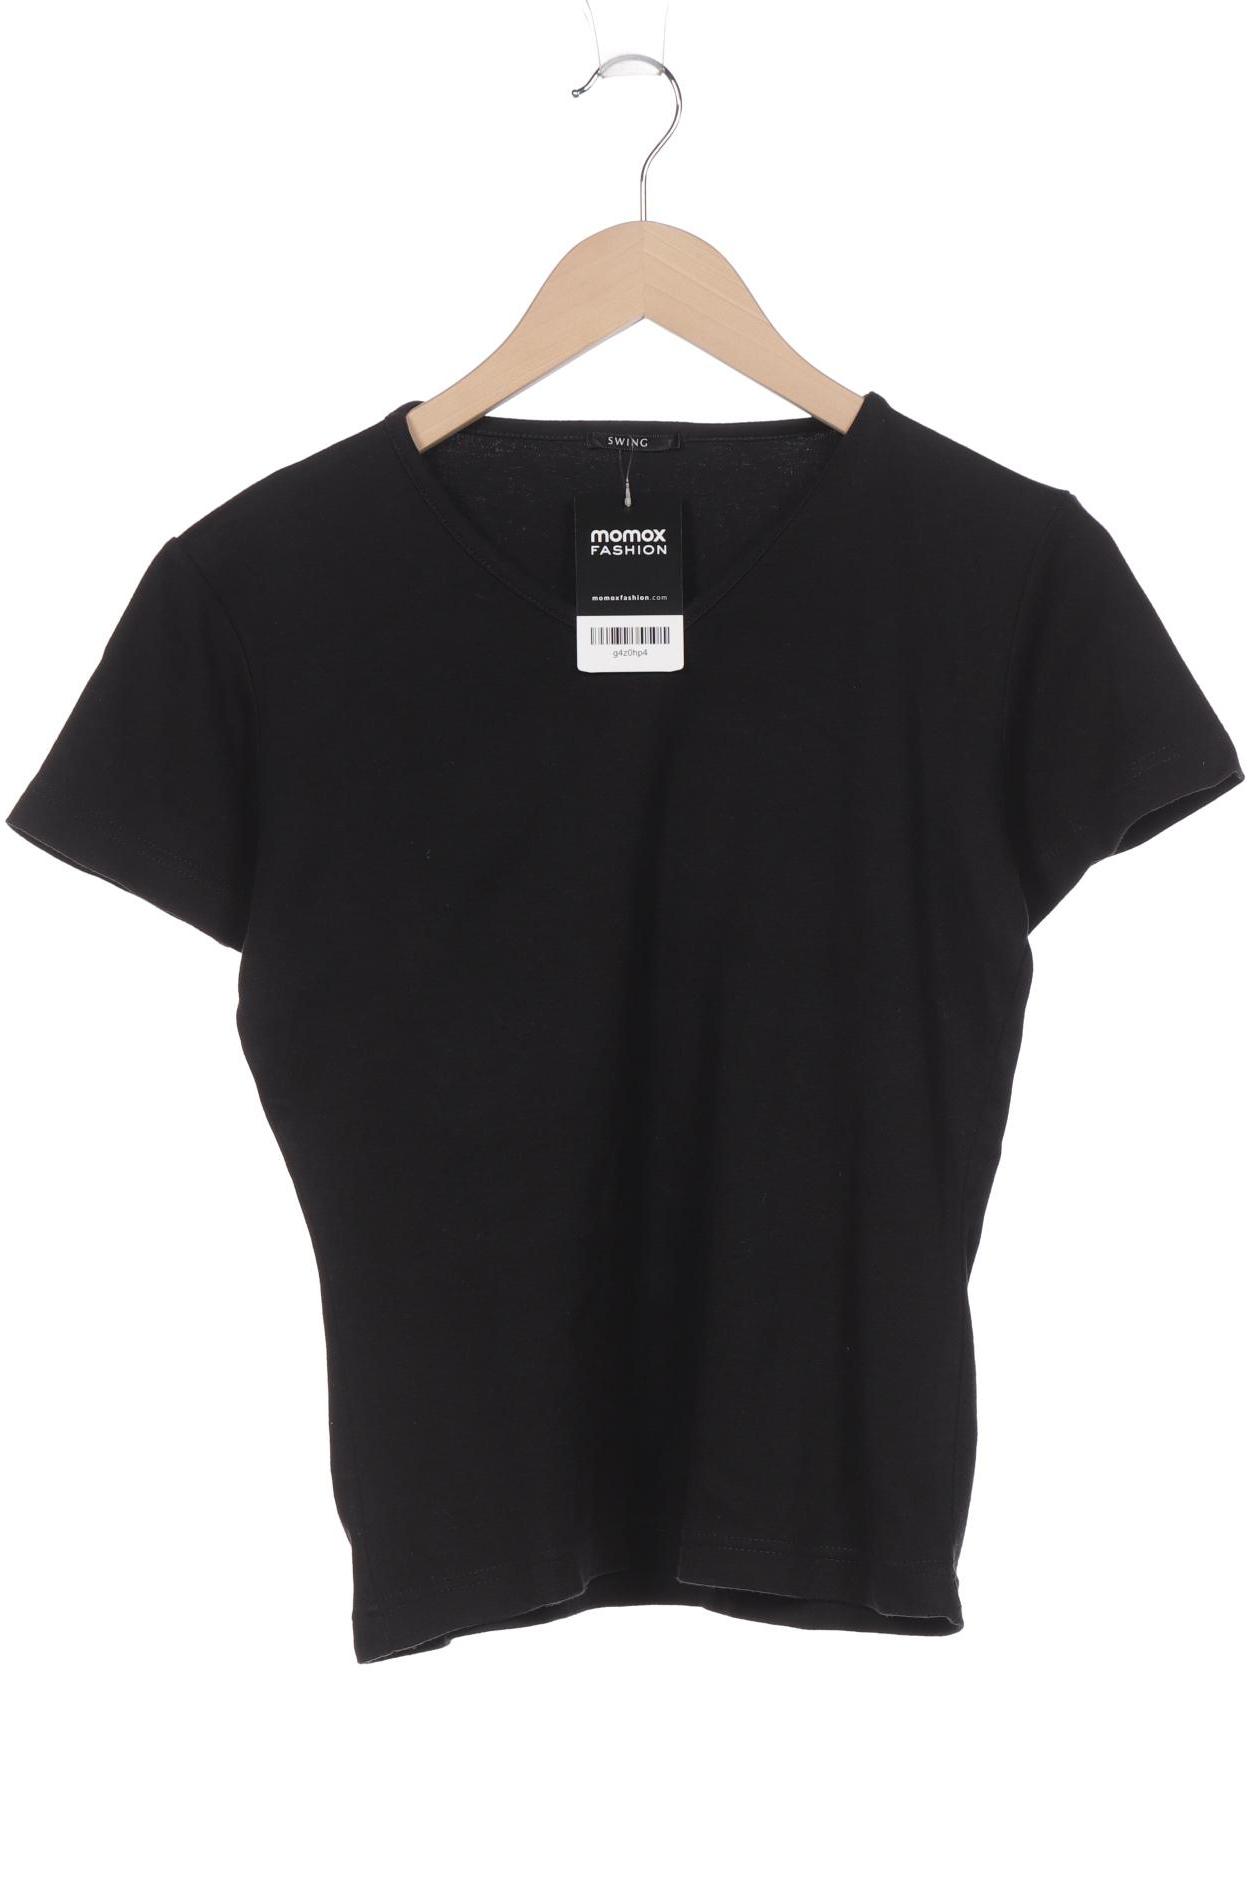 SWING Damen T-Shirt, schwarz von SWING